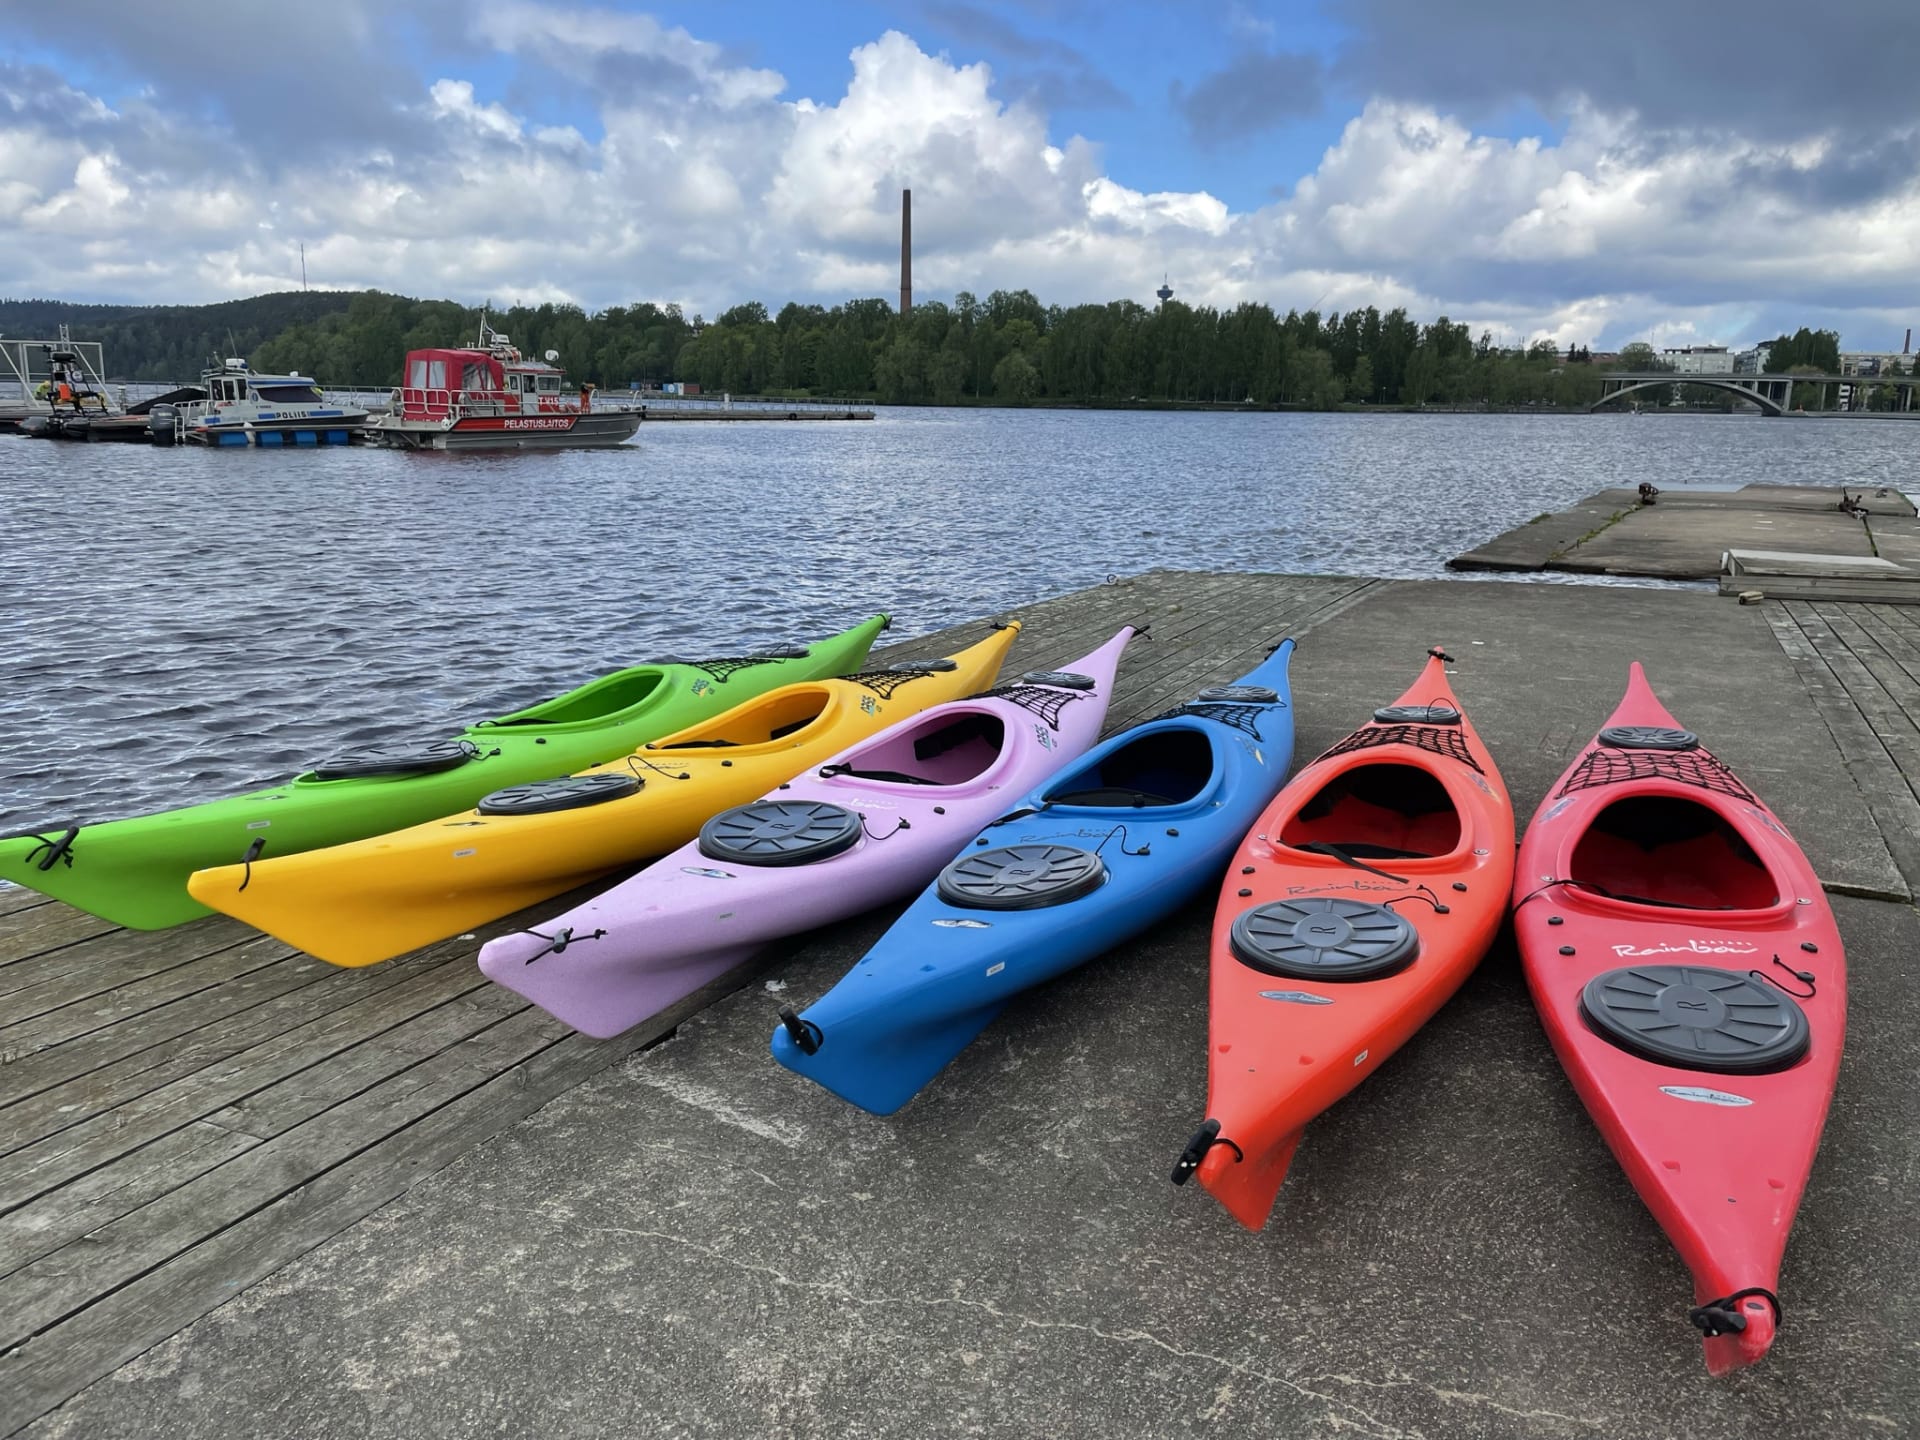 Kayaks by lakeshore.